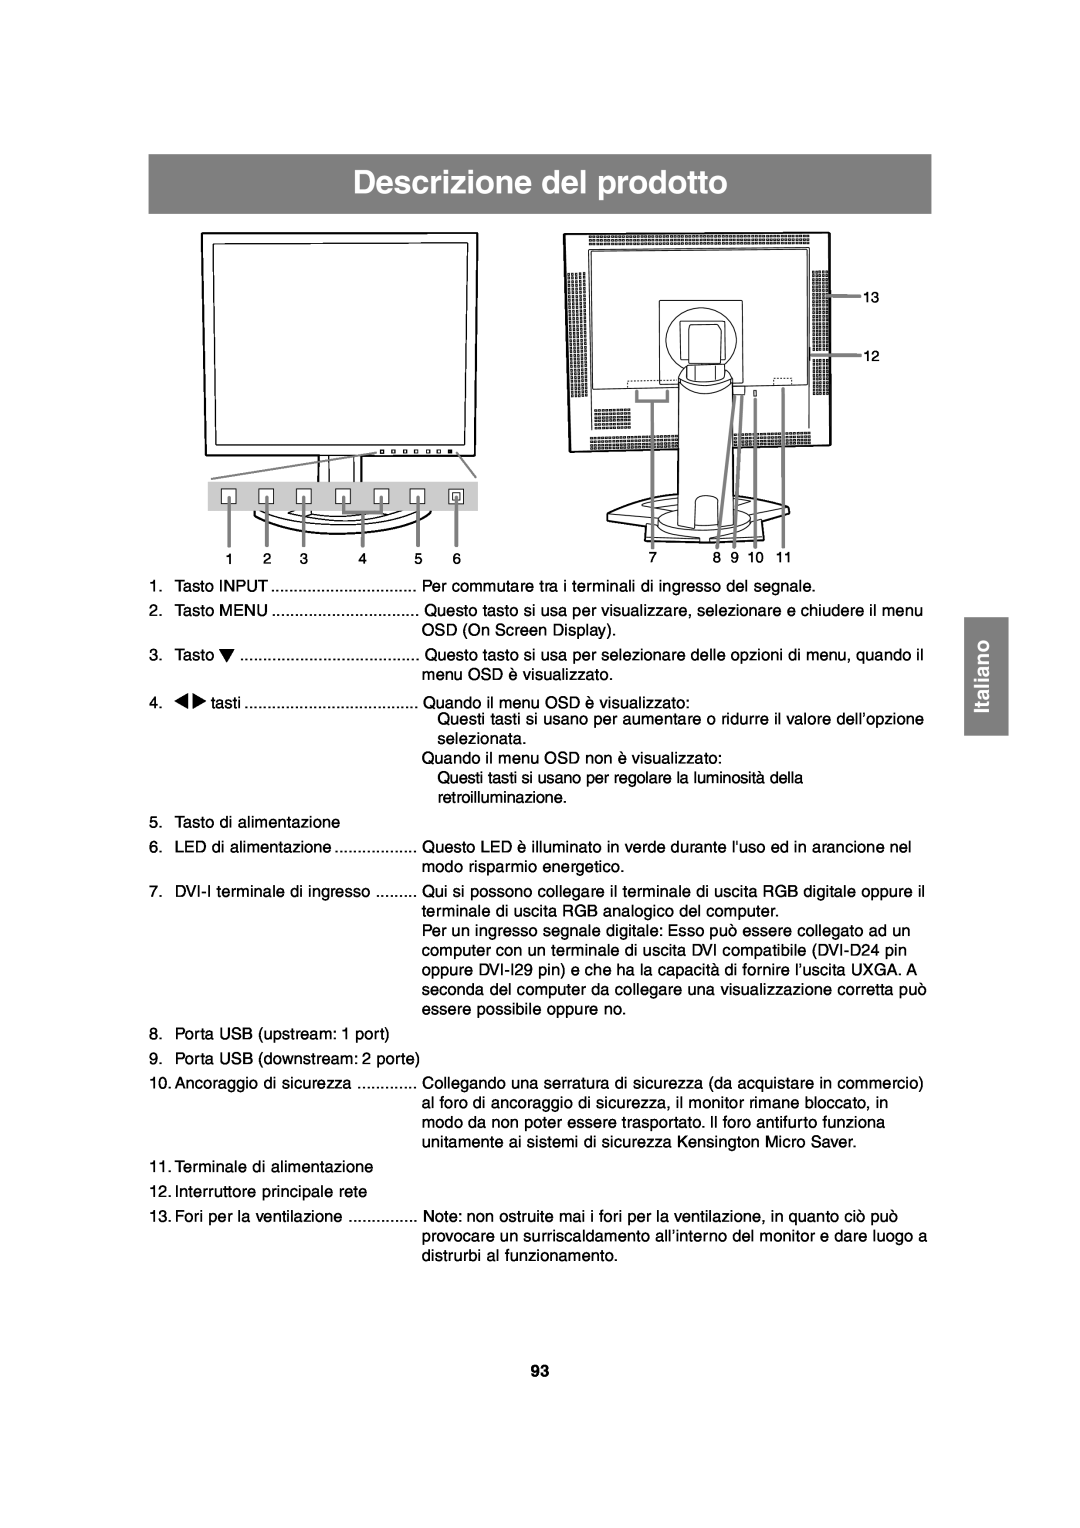 Sharp LL-T2020 operation manual Descrizione del prodotto, Italiano 